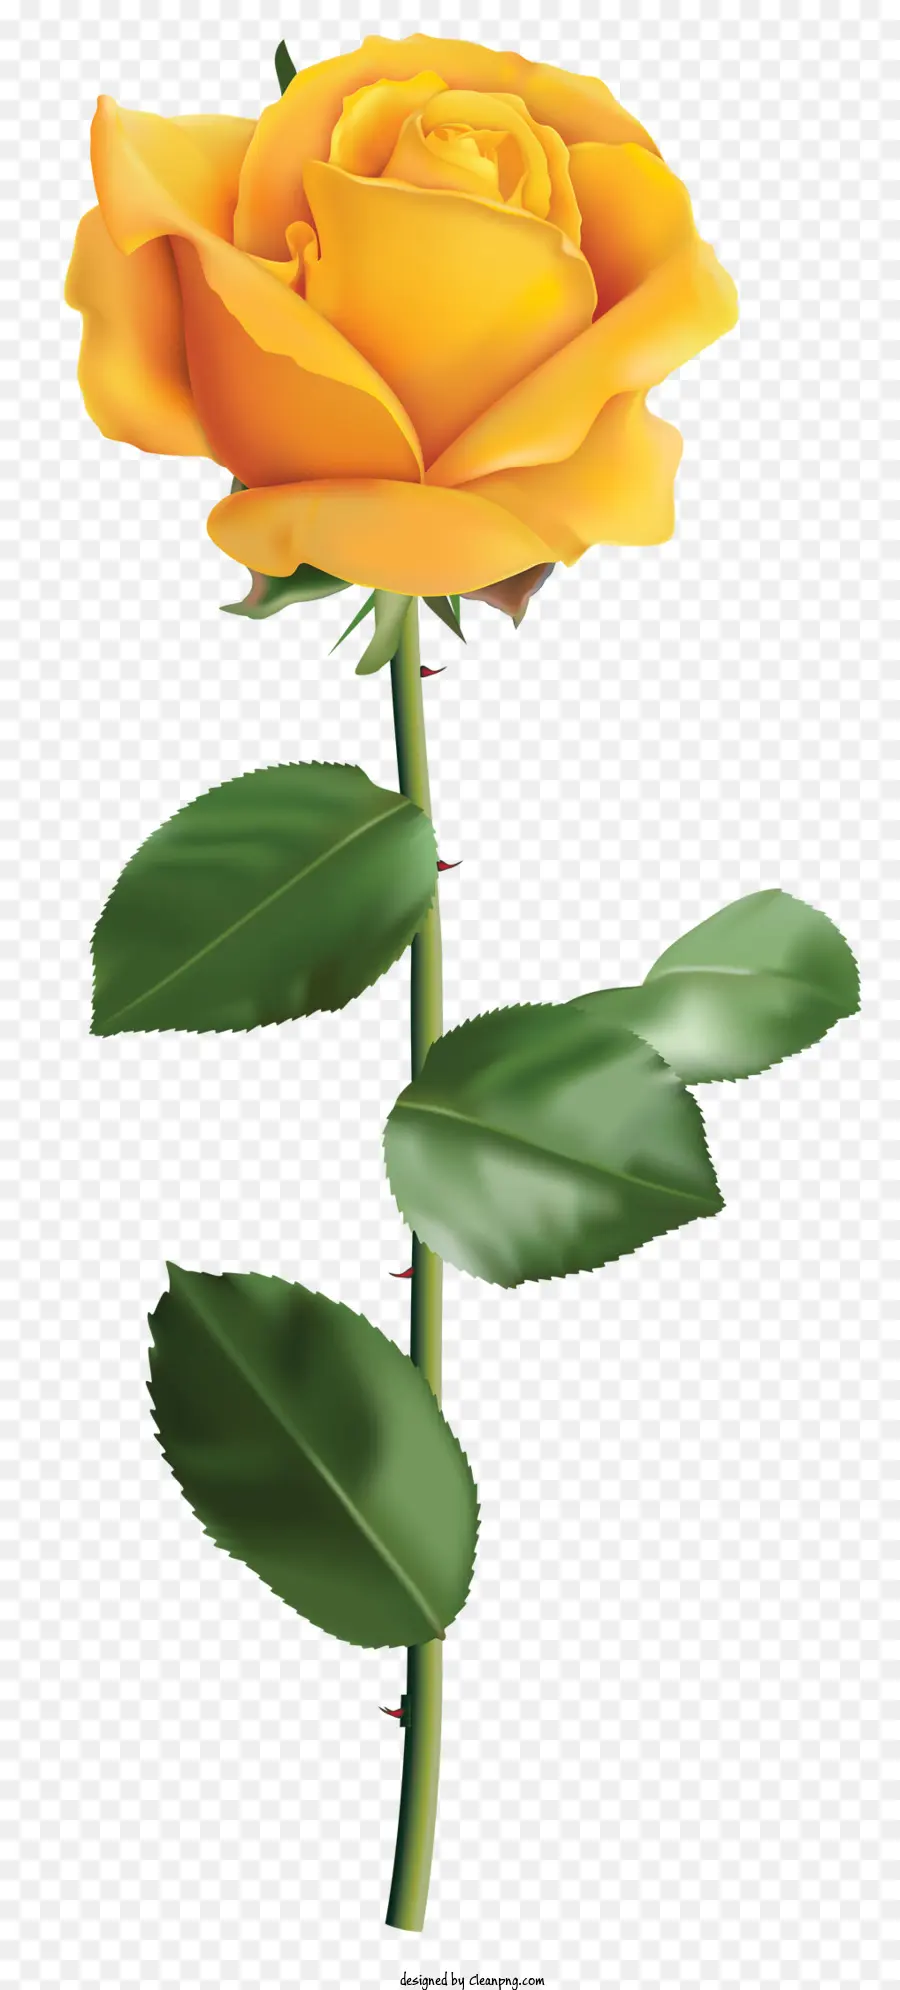 gelbe rose - Lebendige, realistische Single gelbe Rose in Blüte